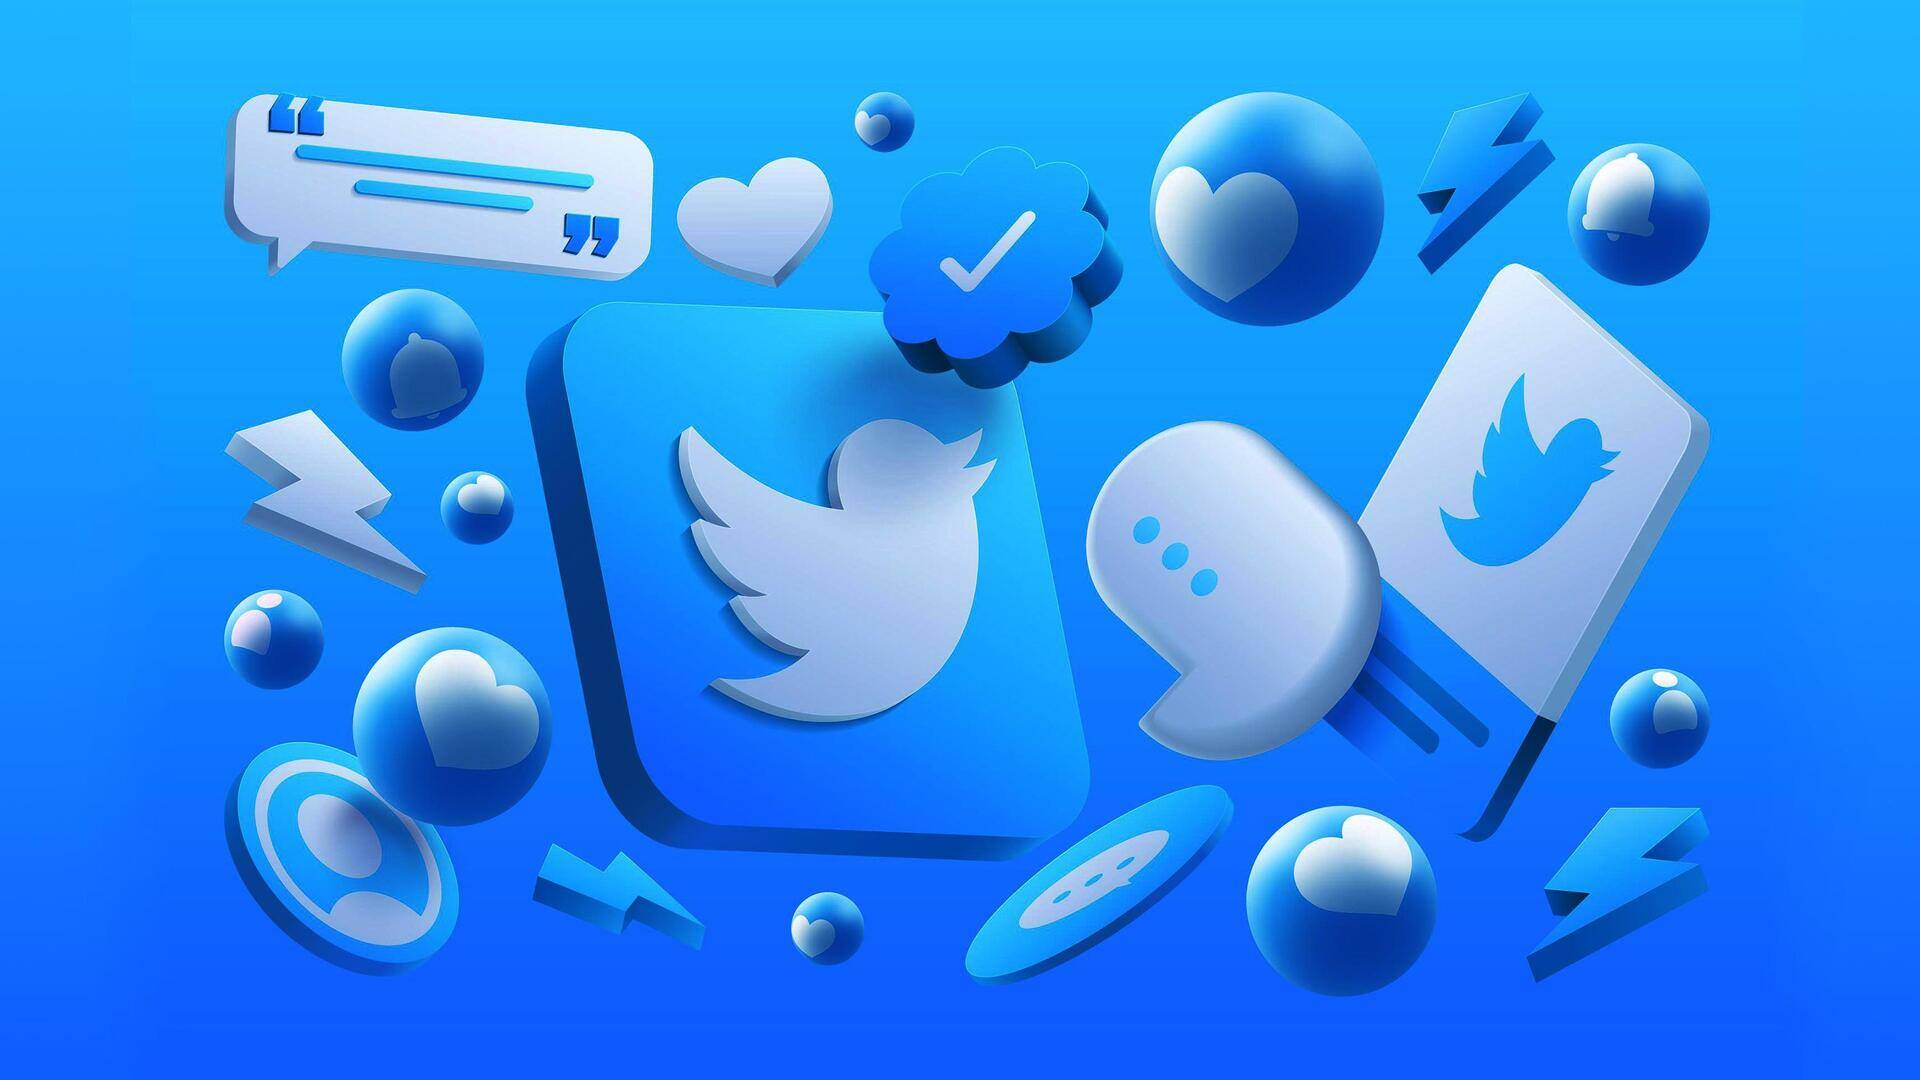 ट्विटर ब्लू के फायदे क्या हैं? जानें इसका चार्ज और सब्सक्राइब करने का तरीका 